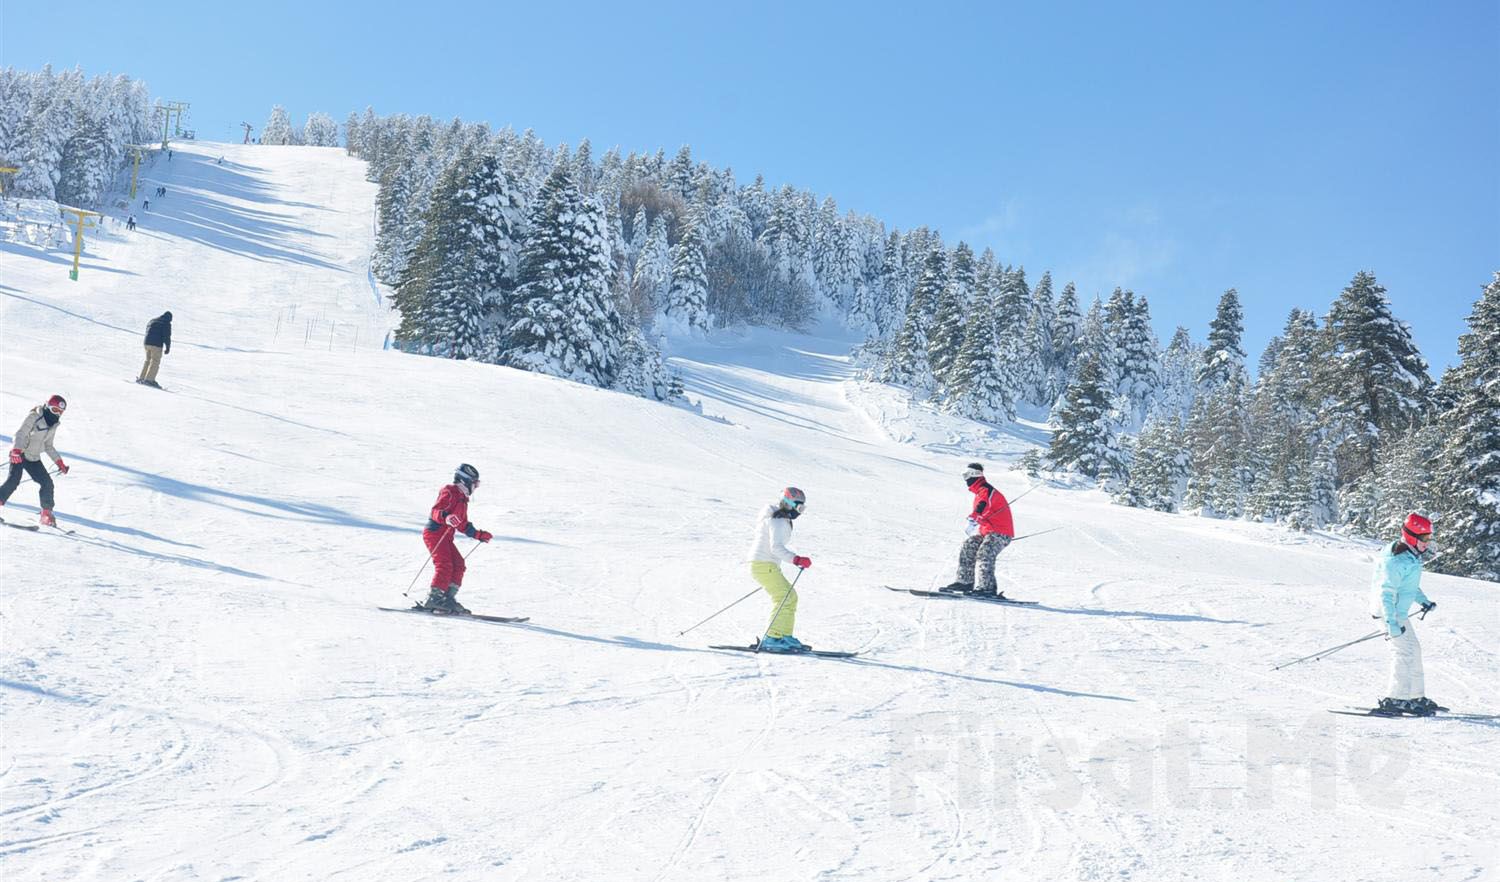 Her Pazar Kesin Kalkışlı Kayak Takımı Dahil Günübirlik Uludağ Kar ve Kayak  Turu (Tukendi) - Fırsat Me